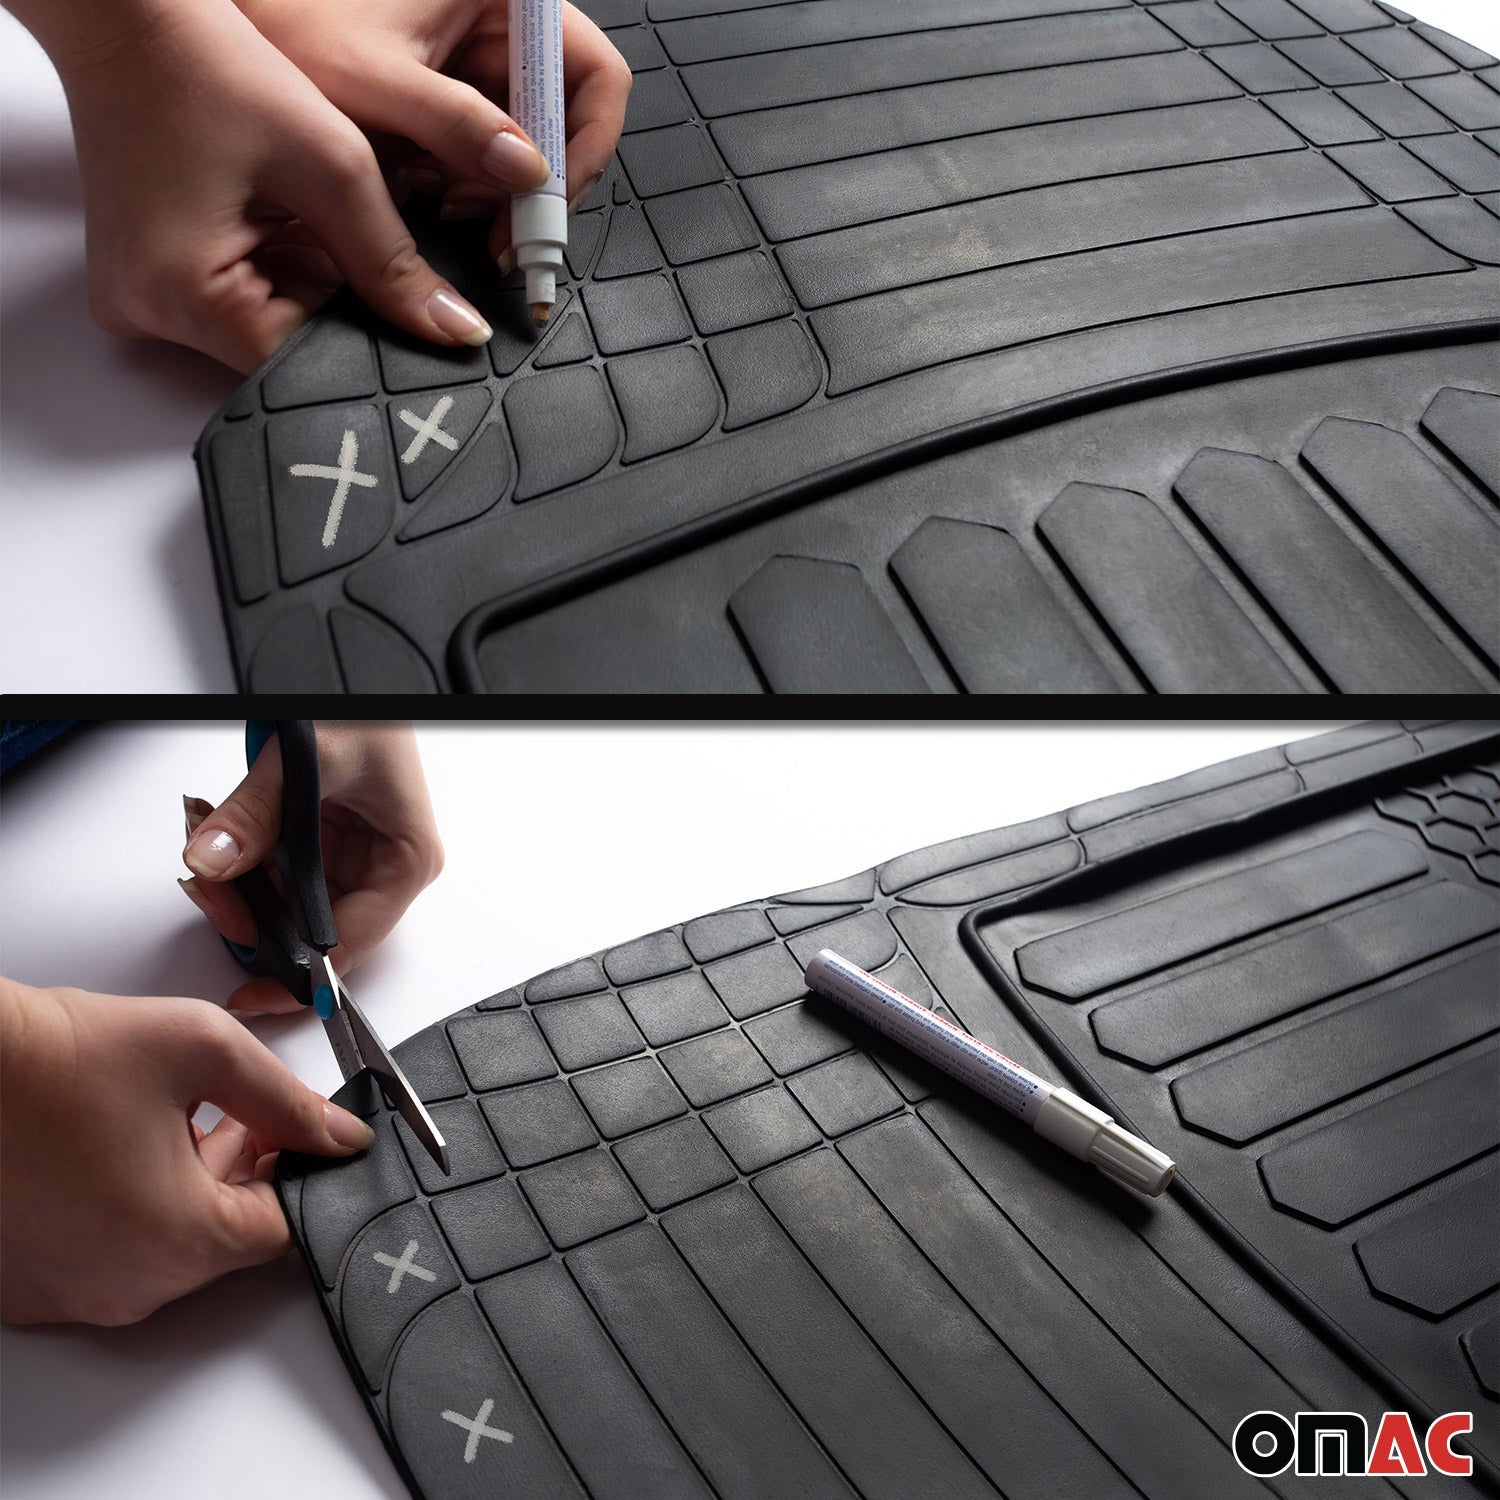 Fußmatte Gummimatten für Mitsubishi Outlander Allwetter Hoher Rand Antirutsch